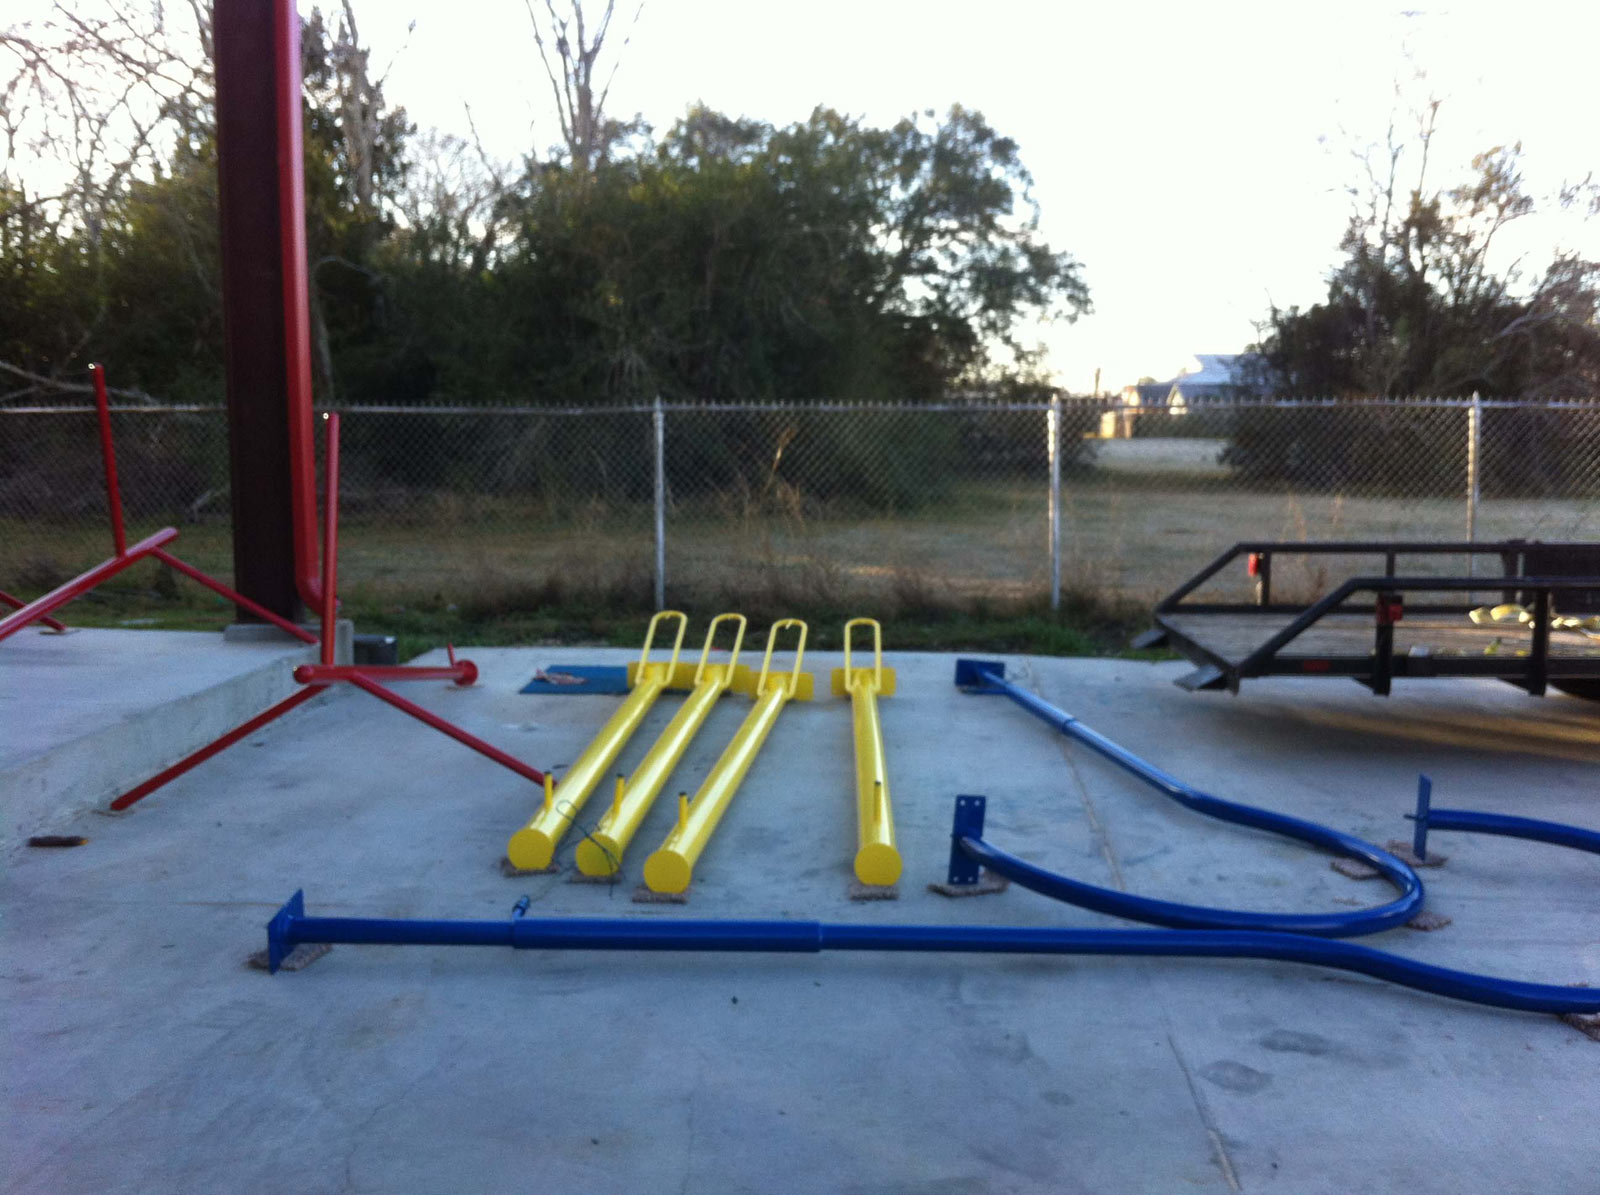 Powder coated metal playground equipment.